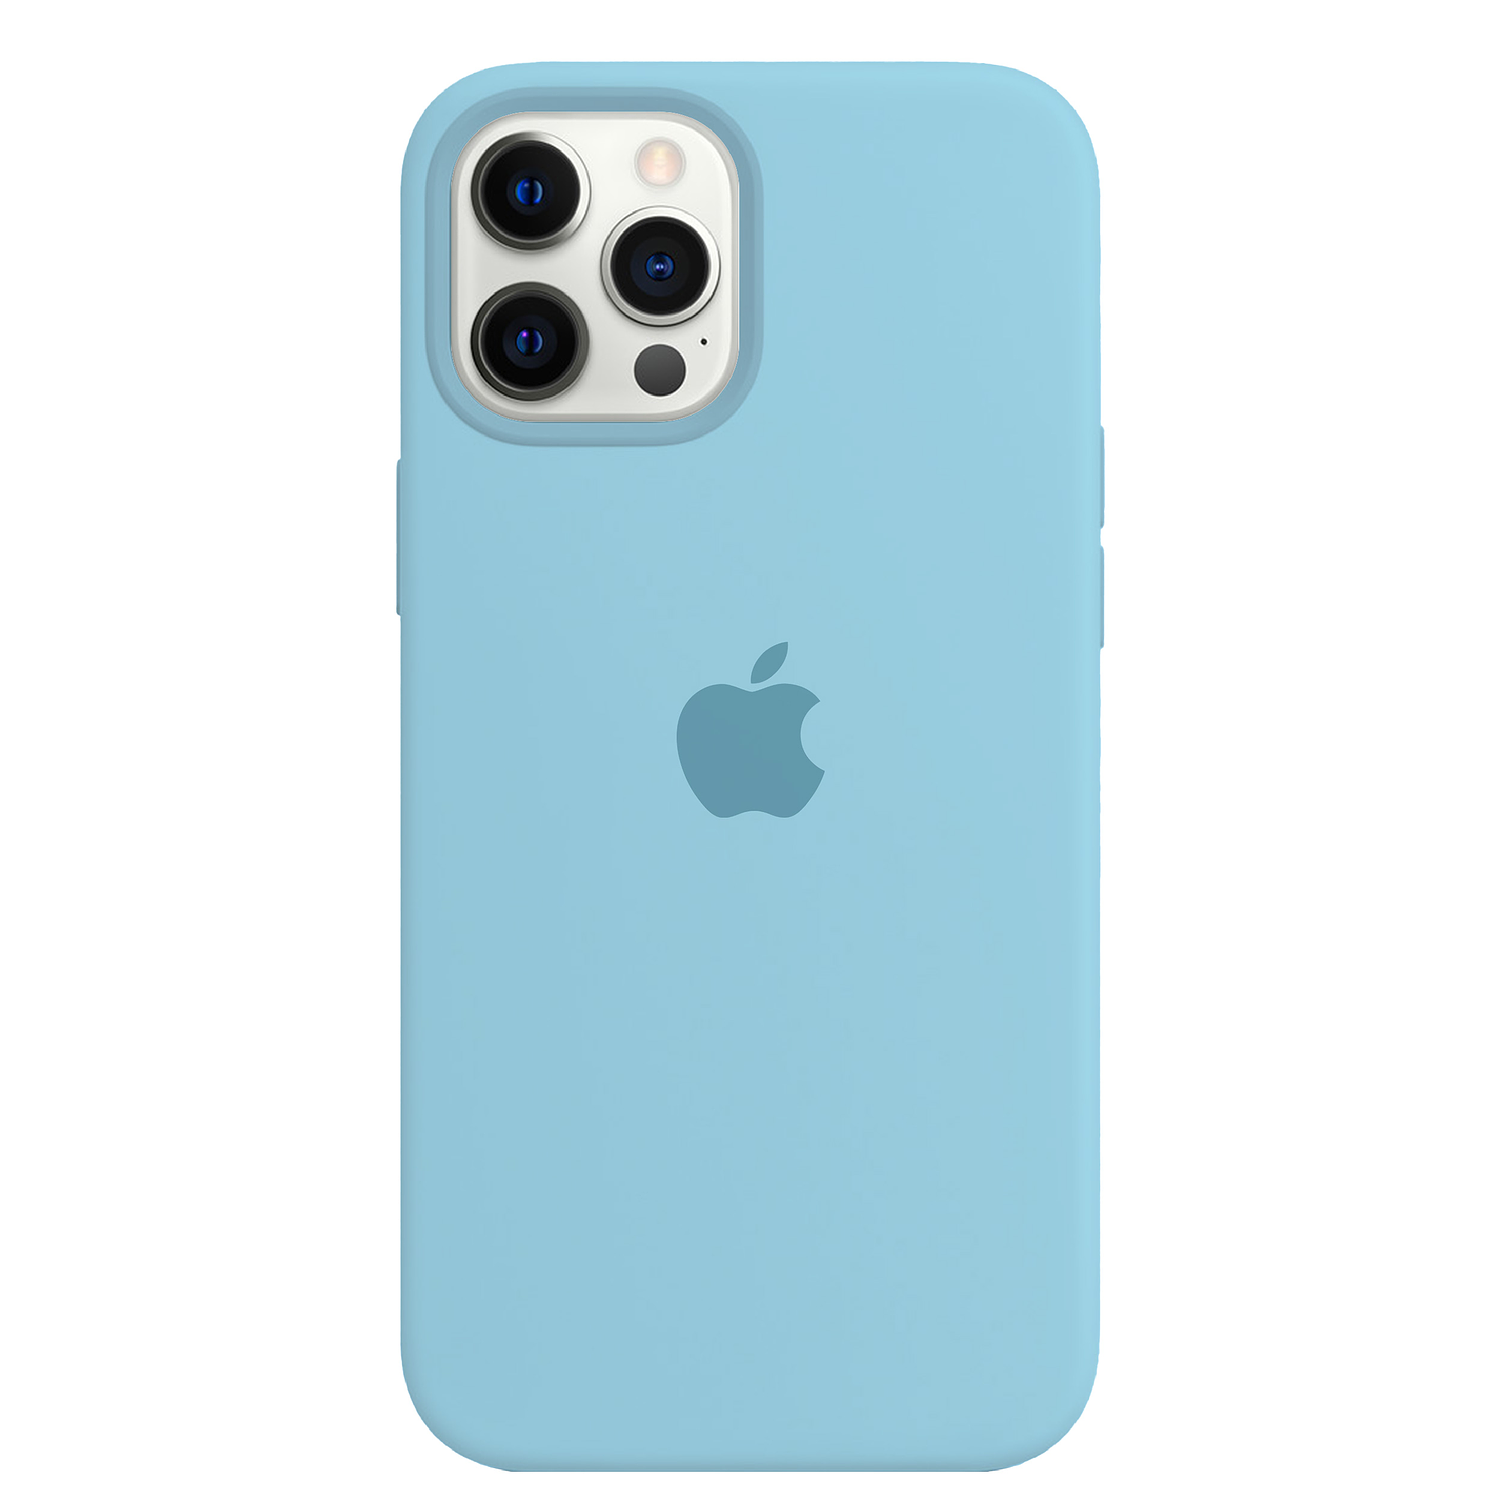 Carcasa de Silicona - iPhone 12 - 12 Pro (Colores)